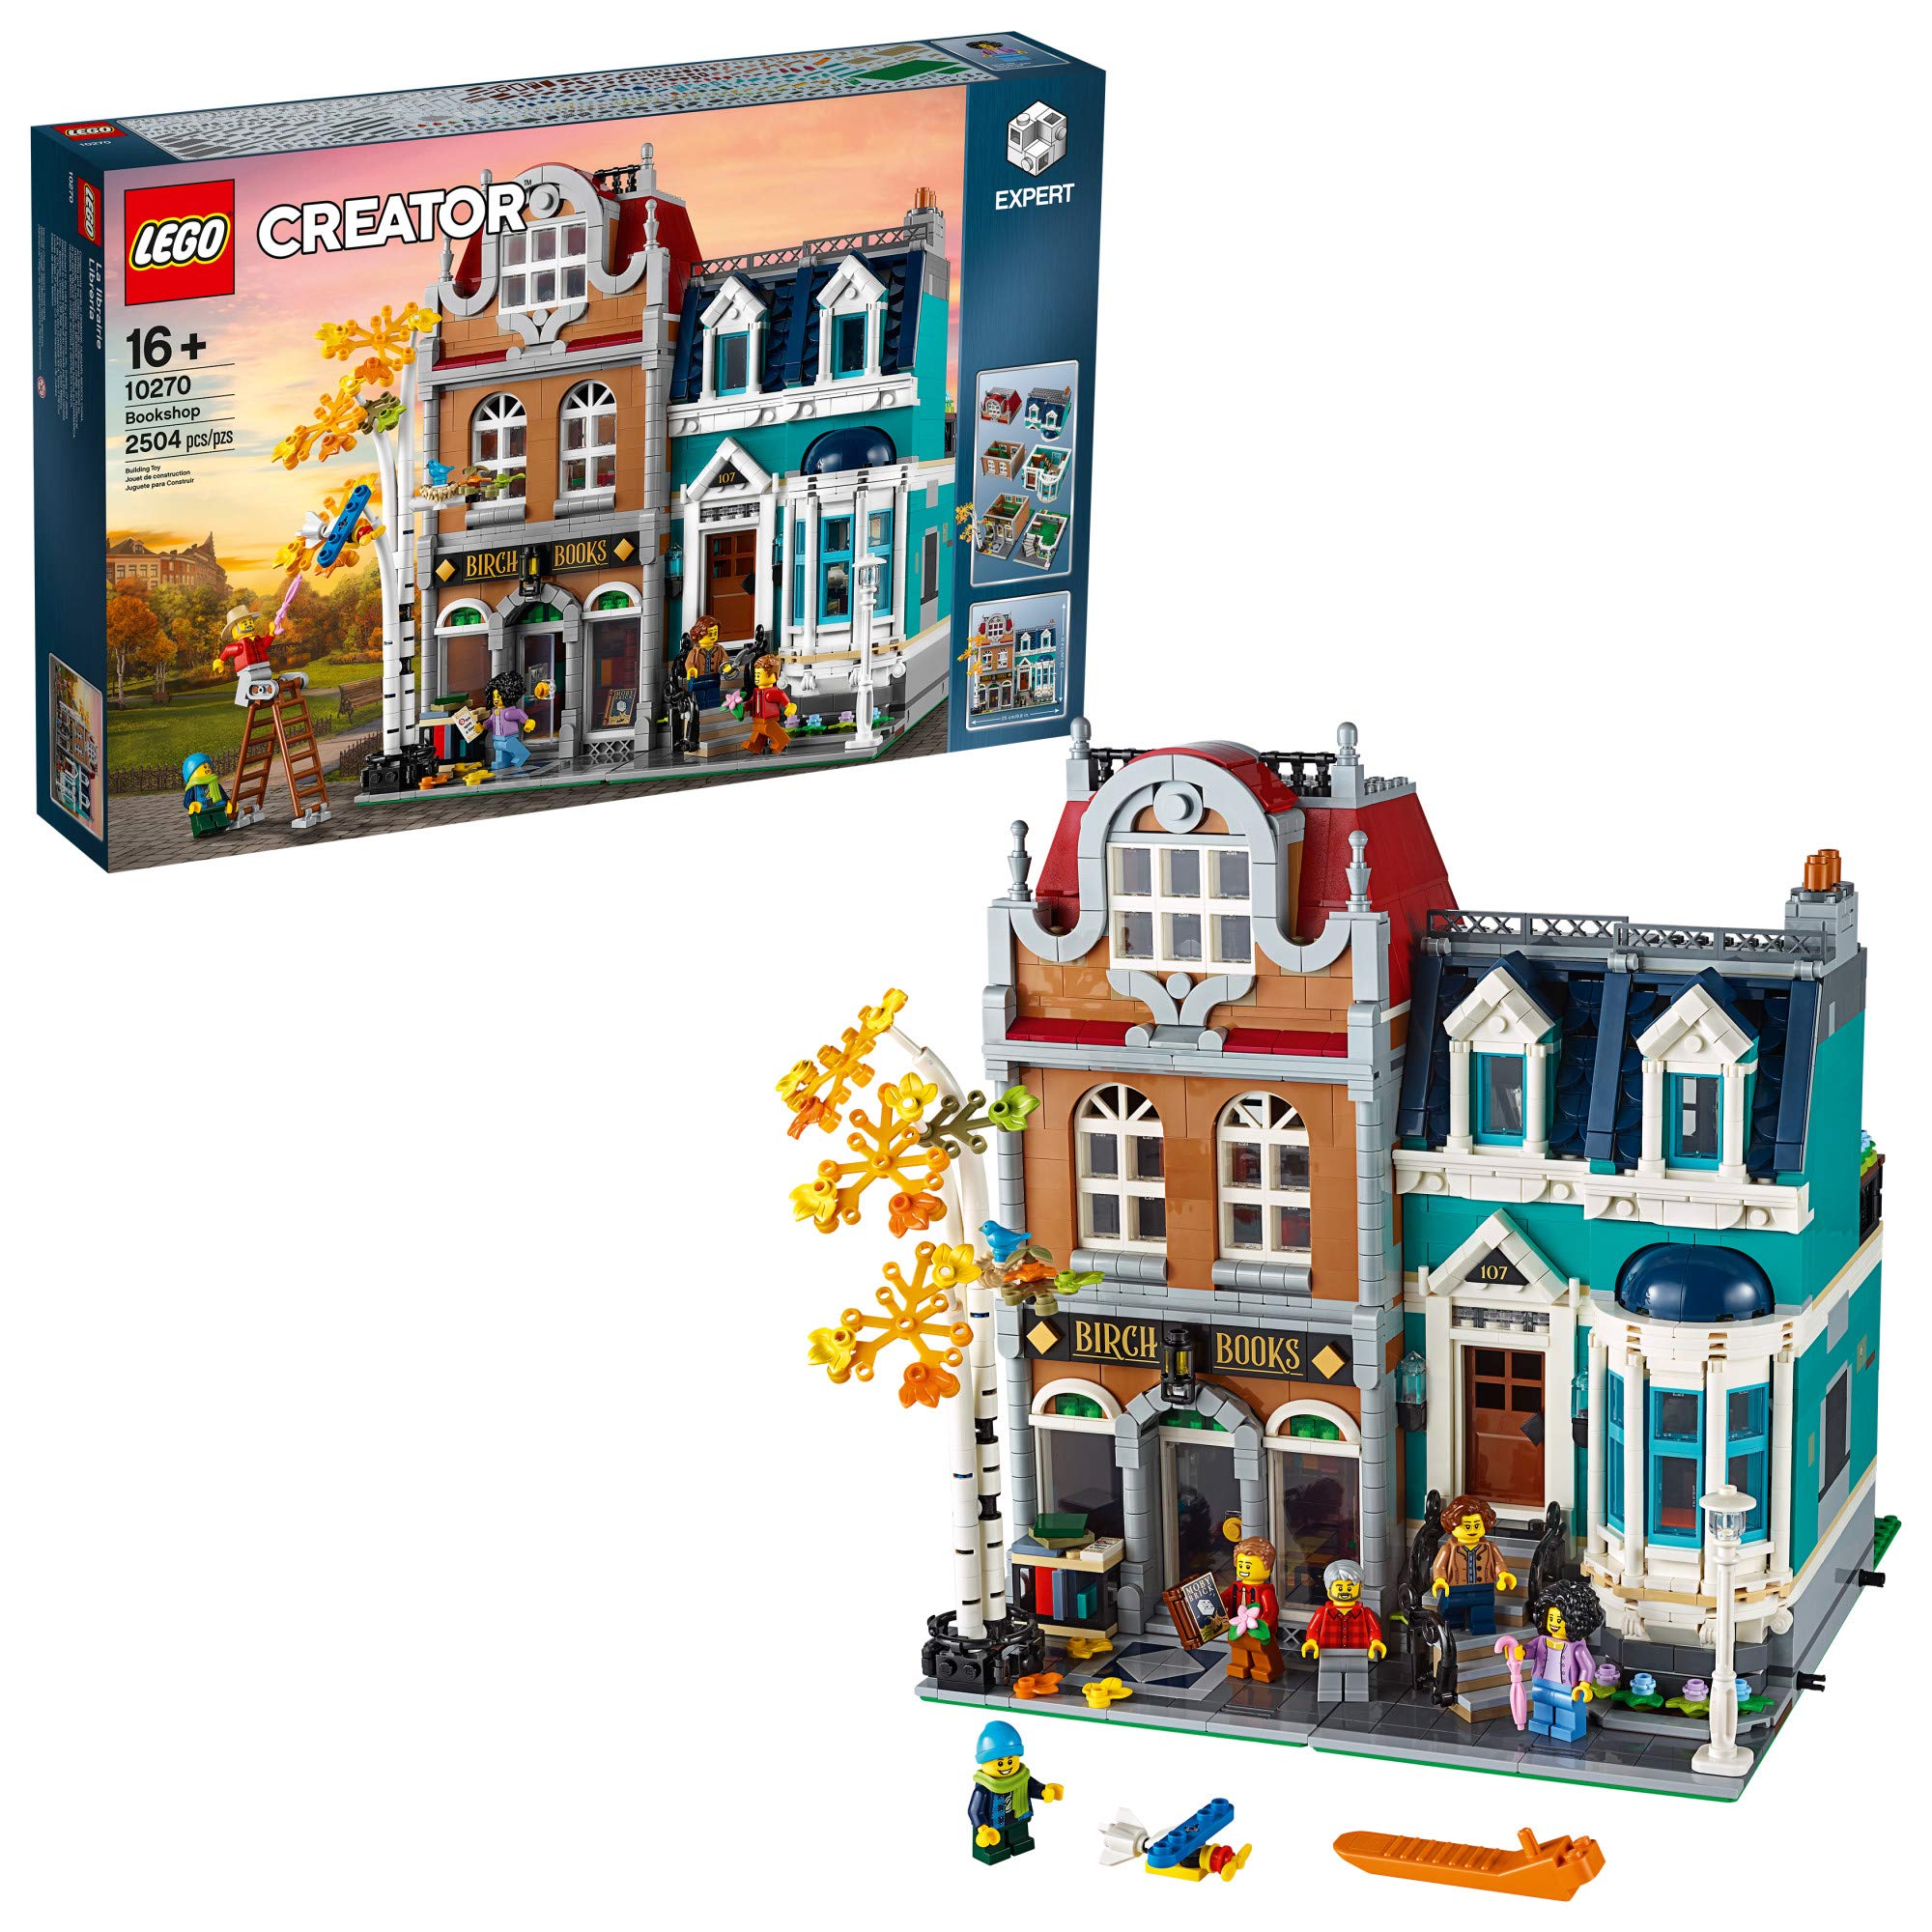 LEGO Bookshop 10270 Building Set (2504 Pieces) - image 1 of 6